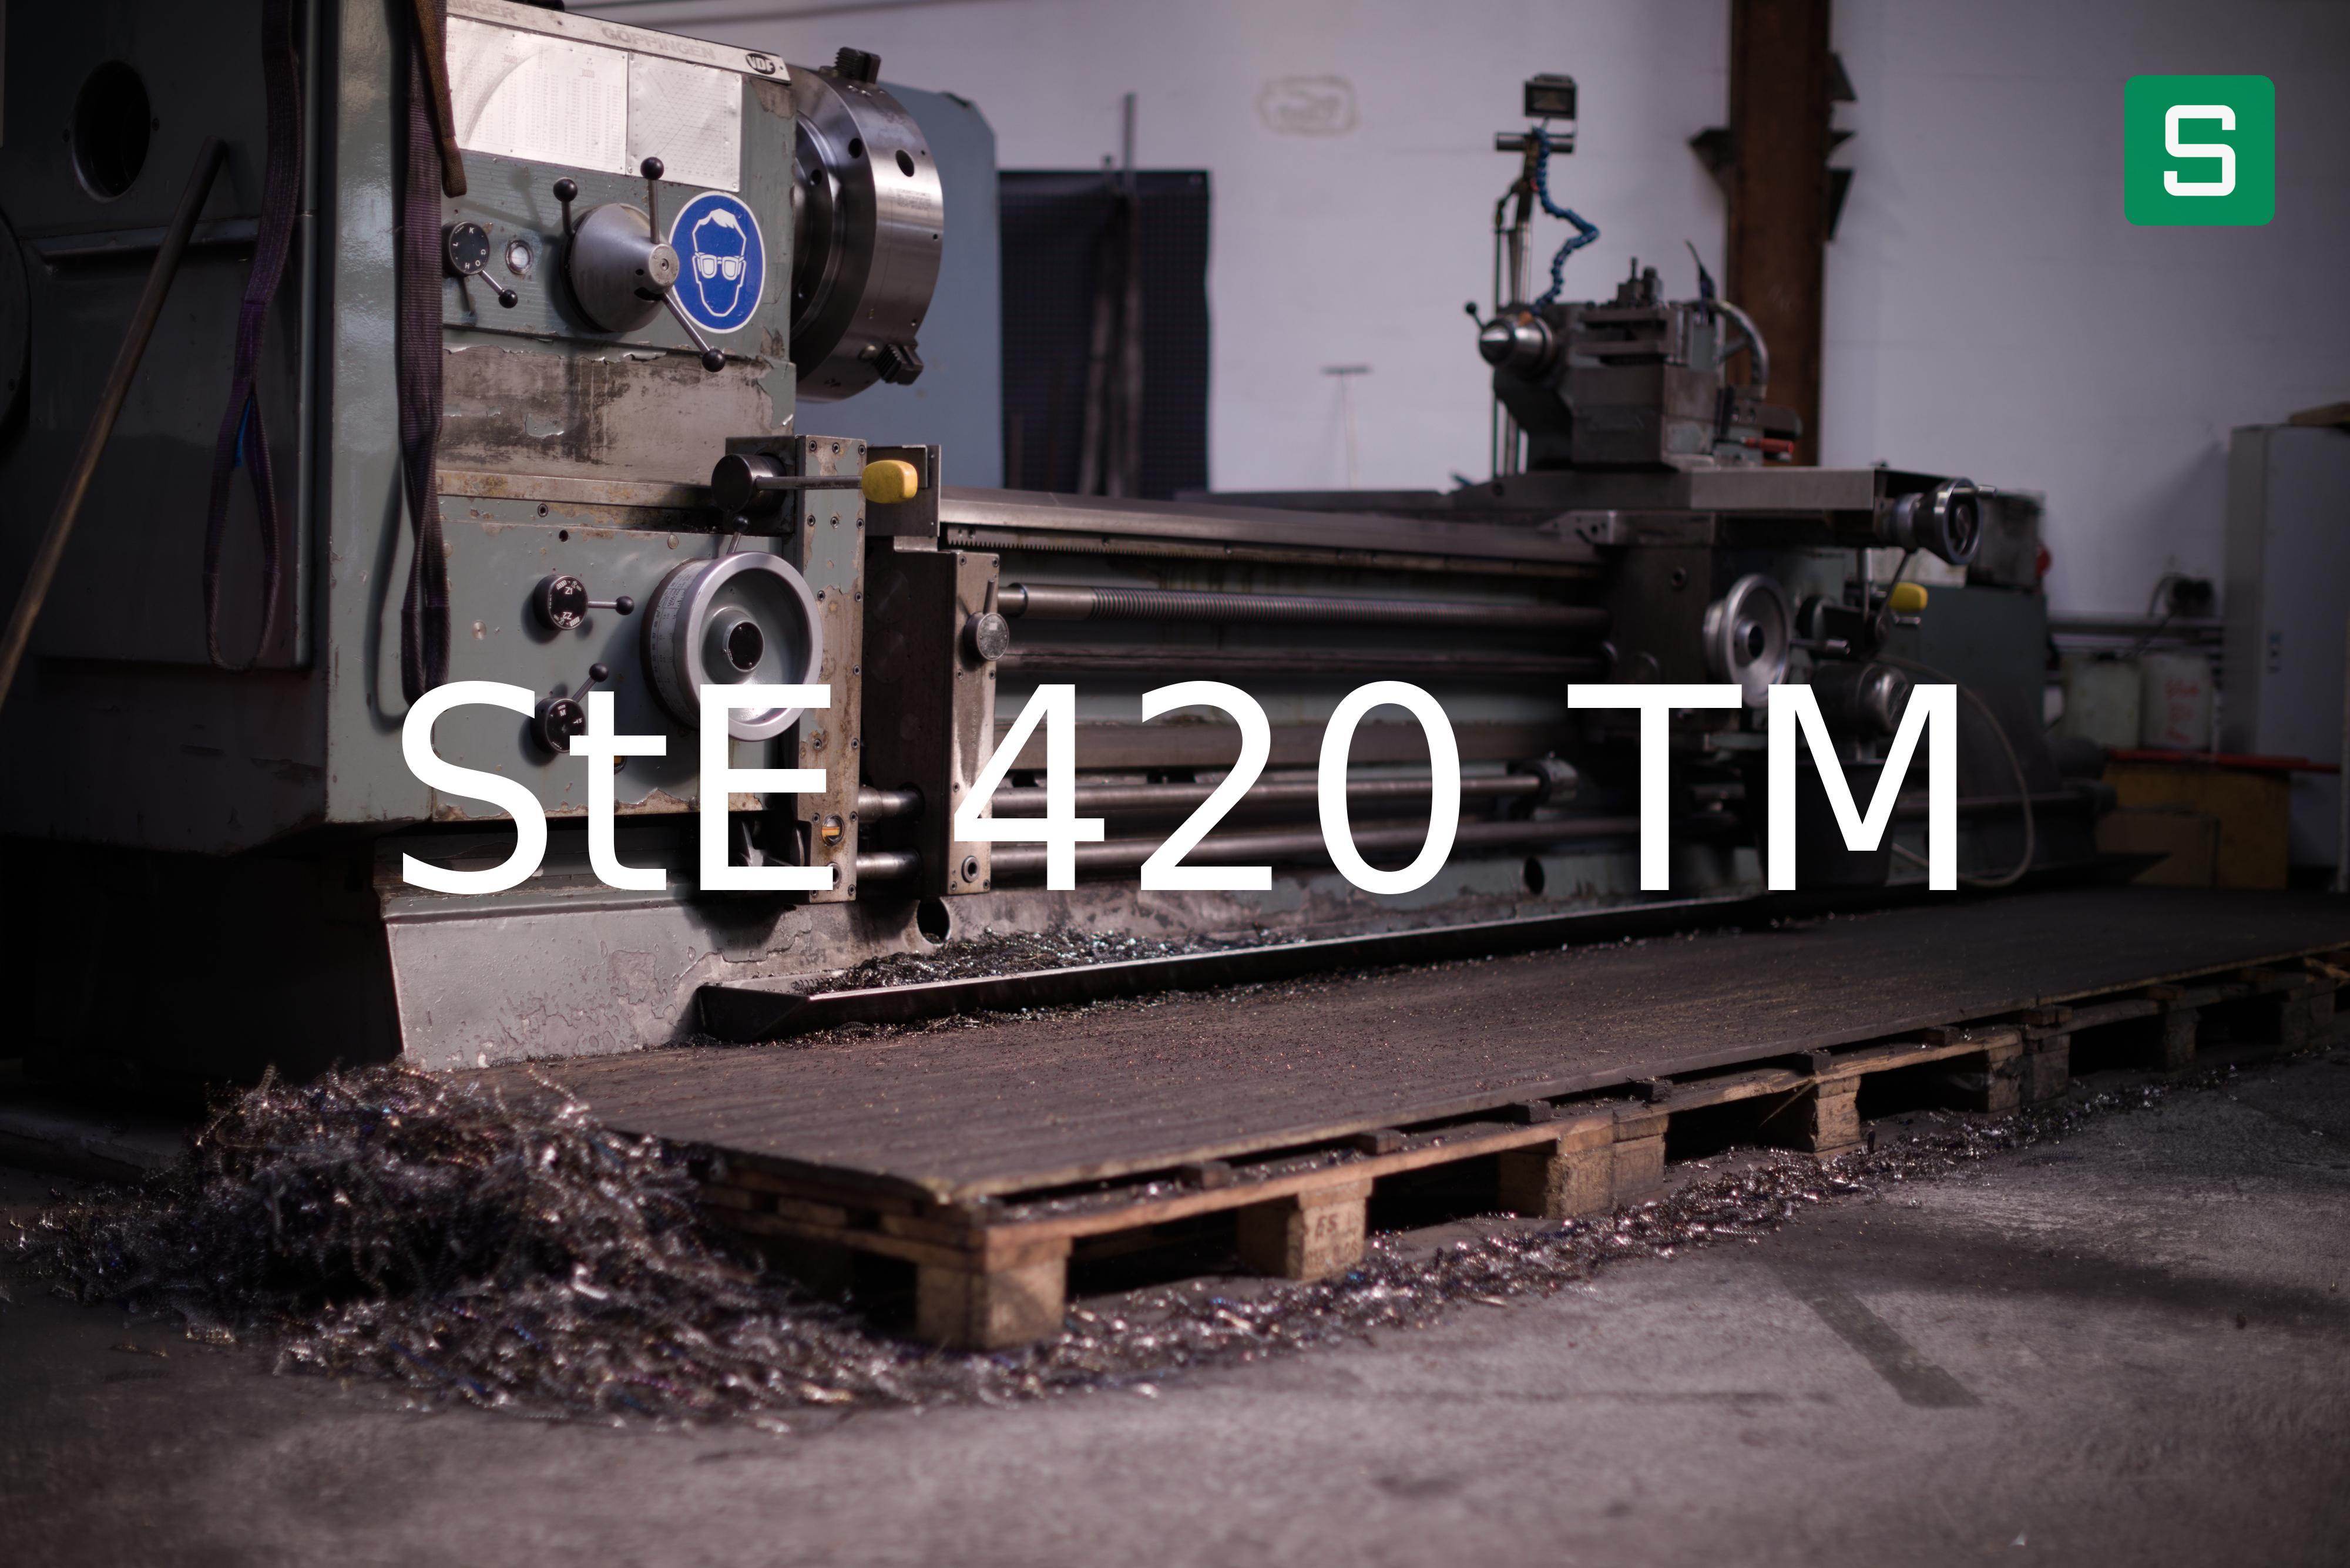 Steel Material: StE 420 TM